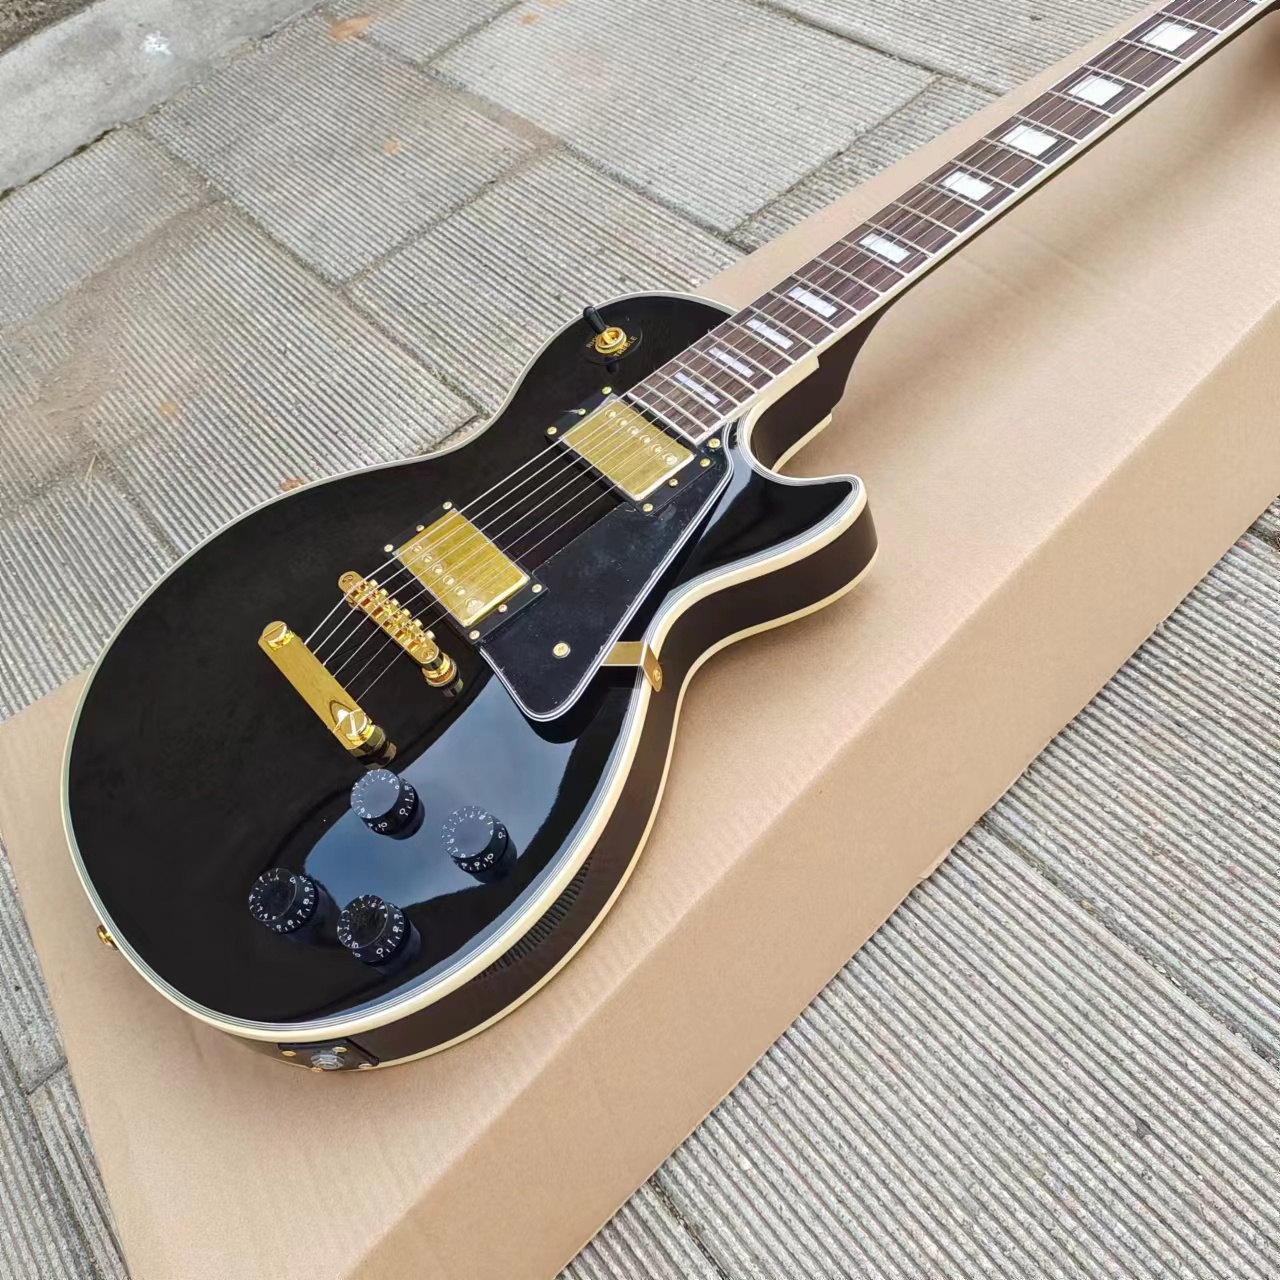 Önerilen elektro gitar siyah caston maun altın aksesuarları ve pikaplar hızlı paketi